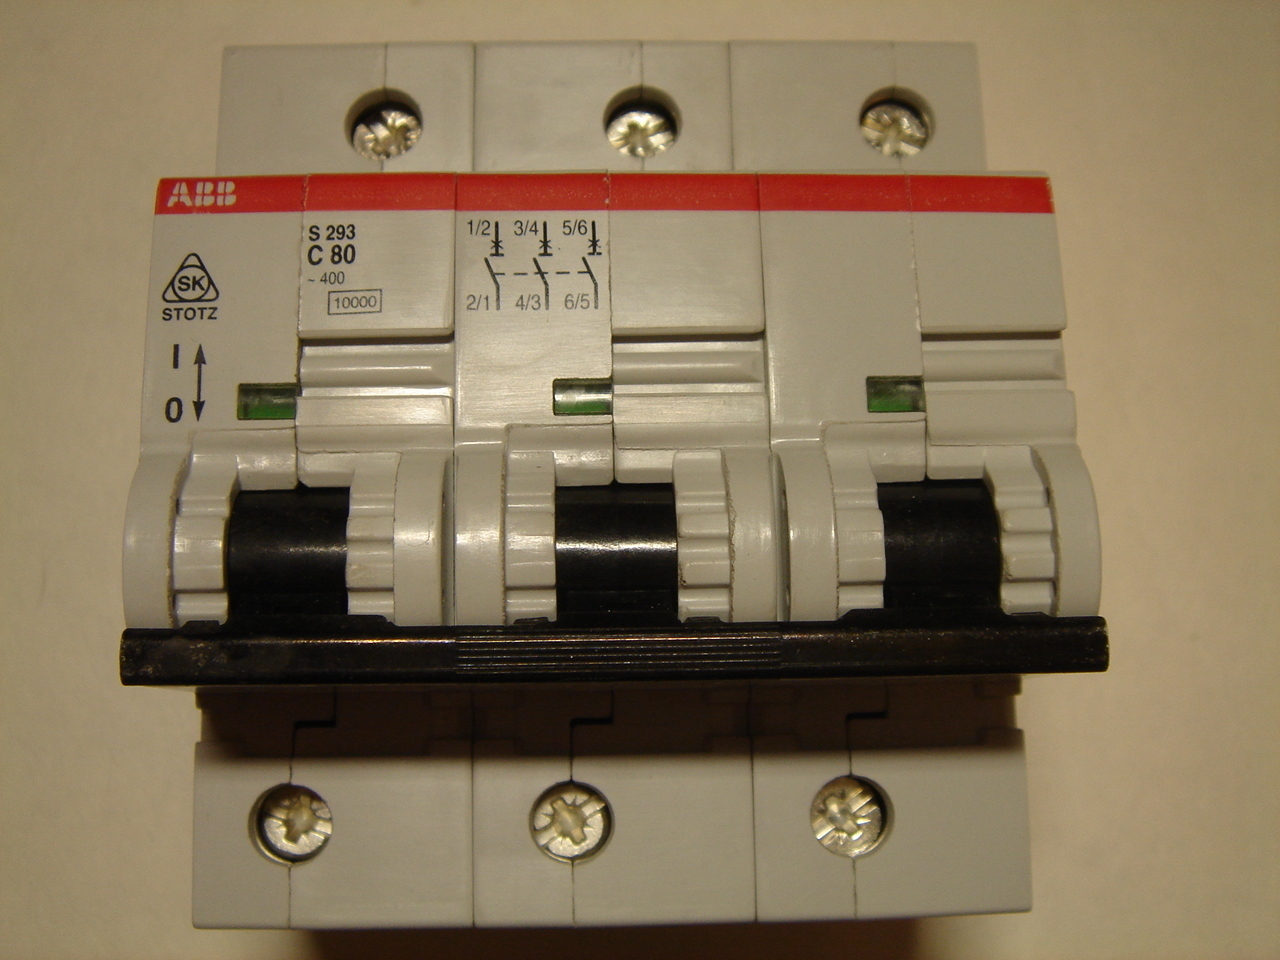 Автоматический выключатель зр. Автомат 100 ампер 3 фазный ABB. ABB s293 80a. ABB s293 c80. Автомат на 630 ампер 3 фазный.